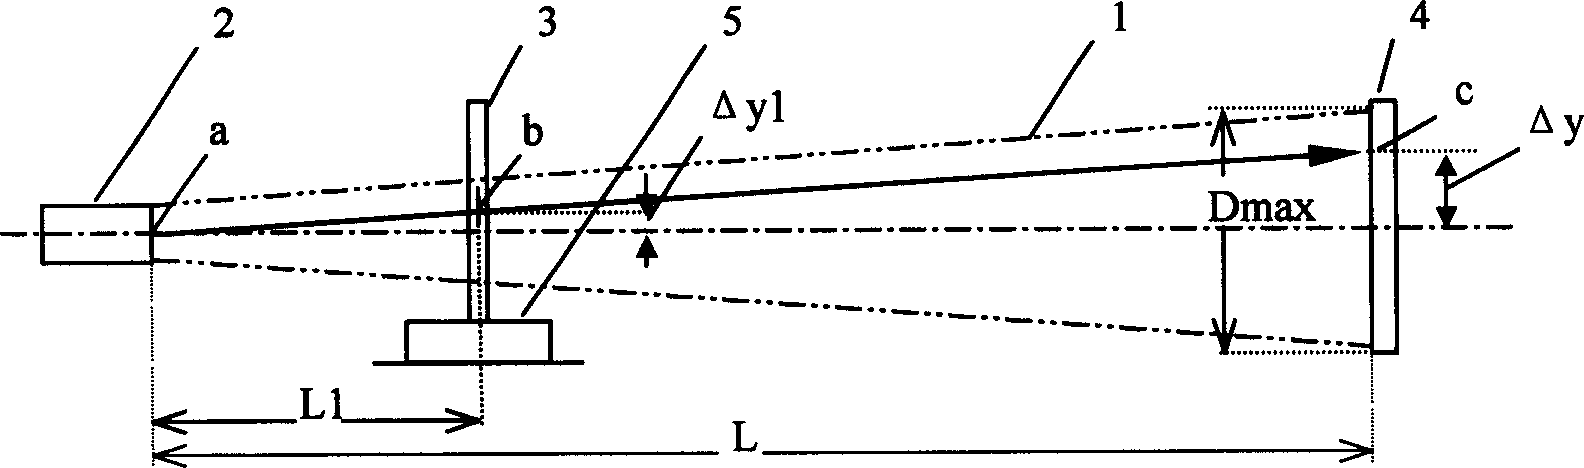 Vacuum laser dam deformation measuring method